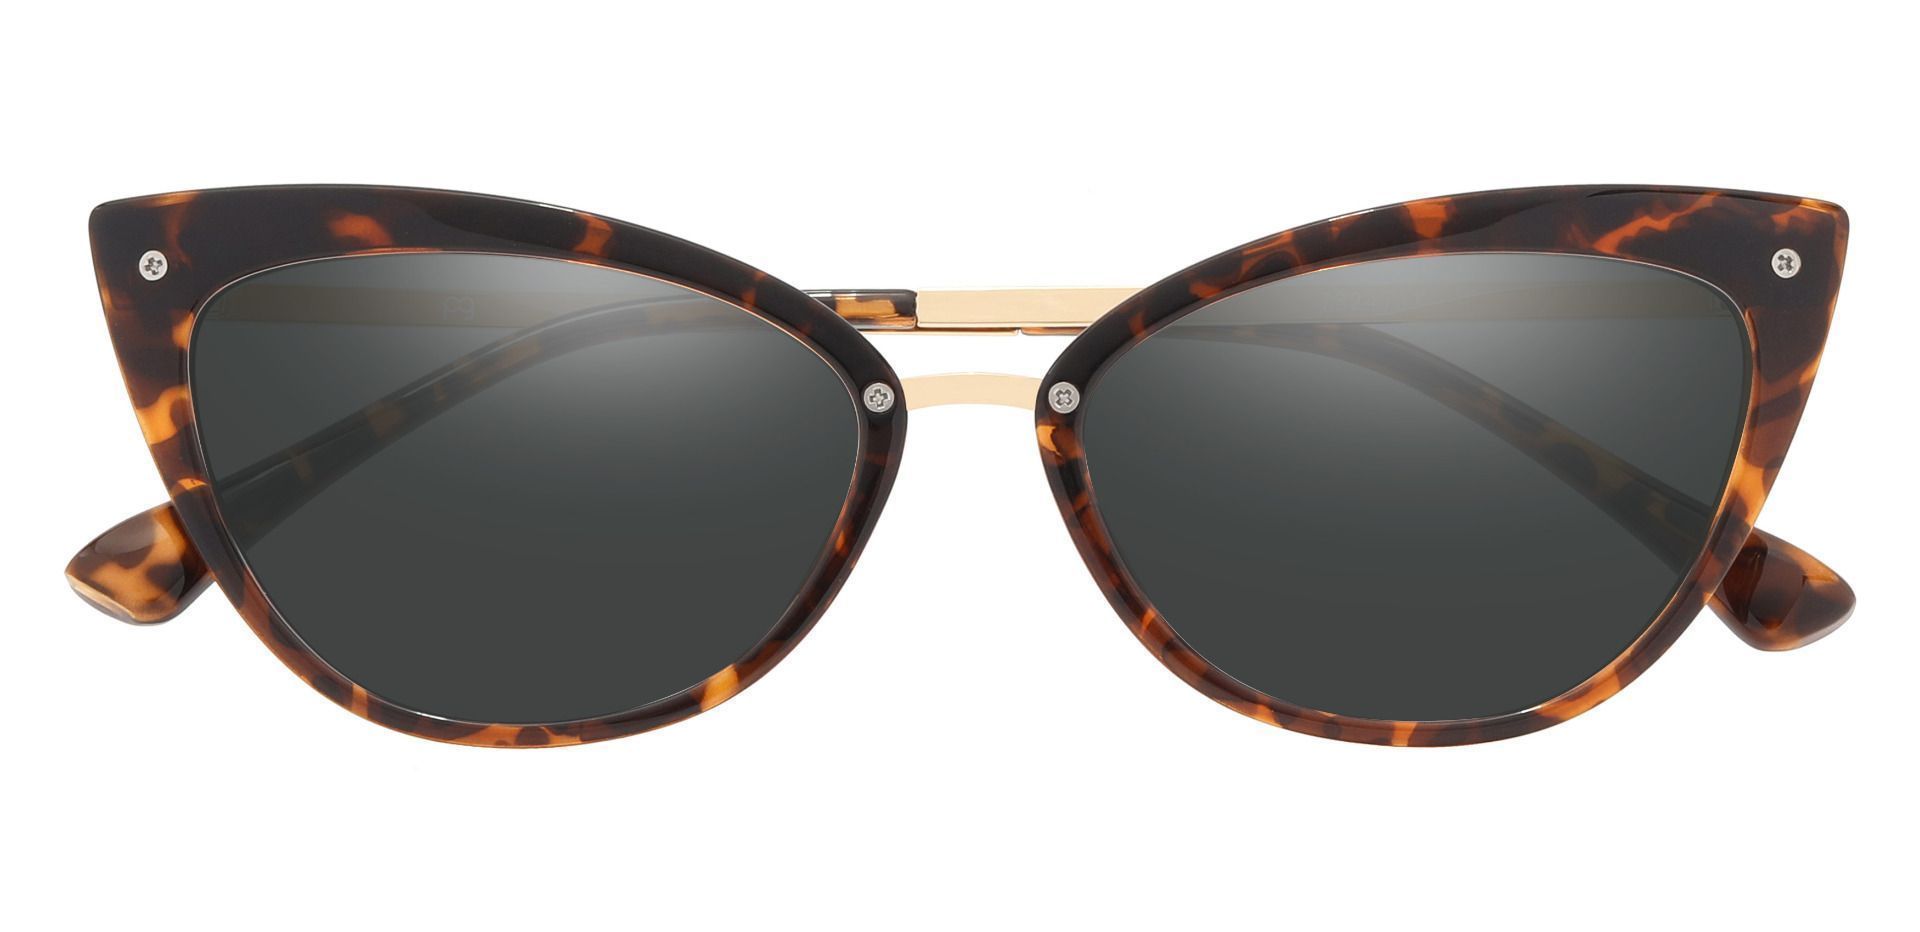 Glenda Cat Eye Prescription Sunglasses - Tortoise Frame With Gray Lenses